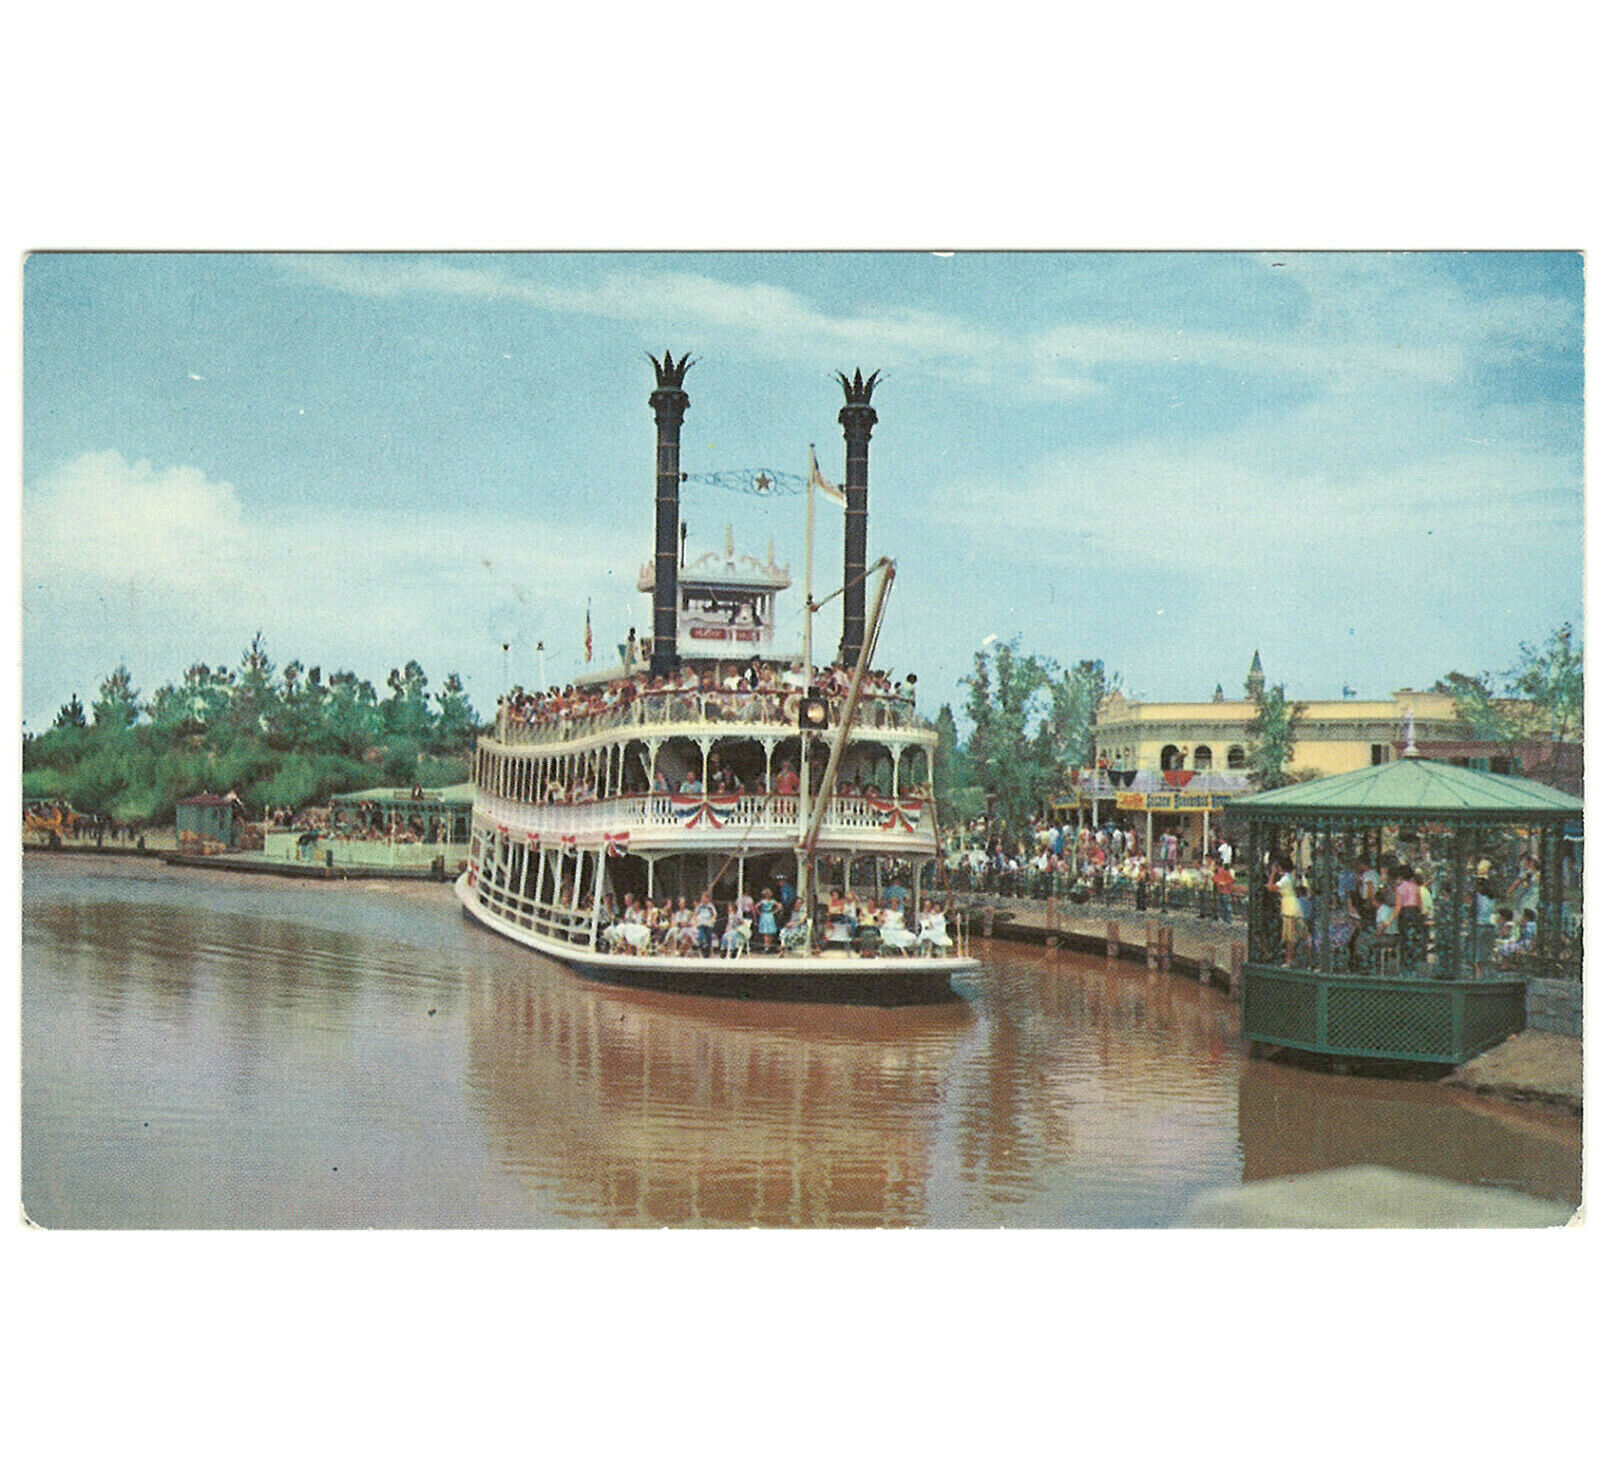 Disneyland Vintage Unused Postcard 1955 Mark Twain The Rivers Of America P12293